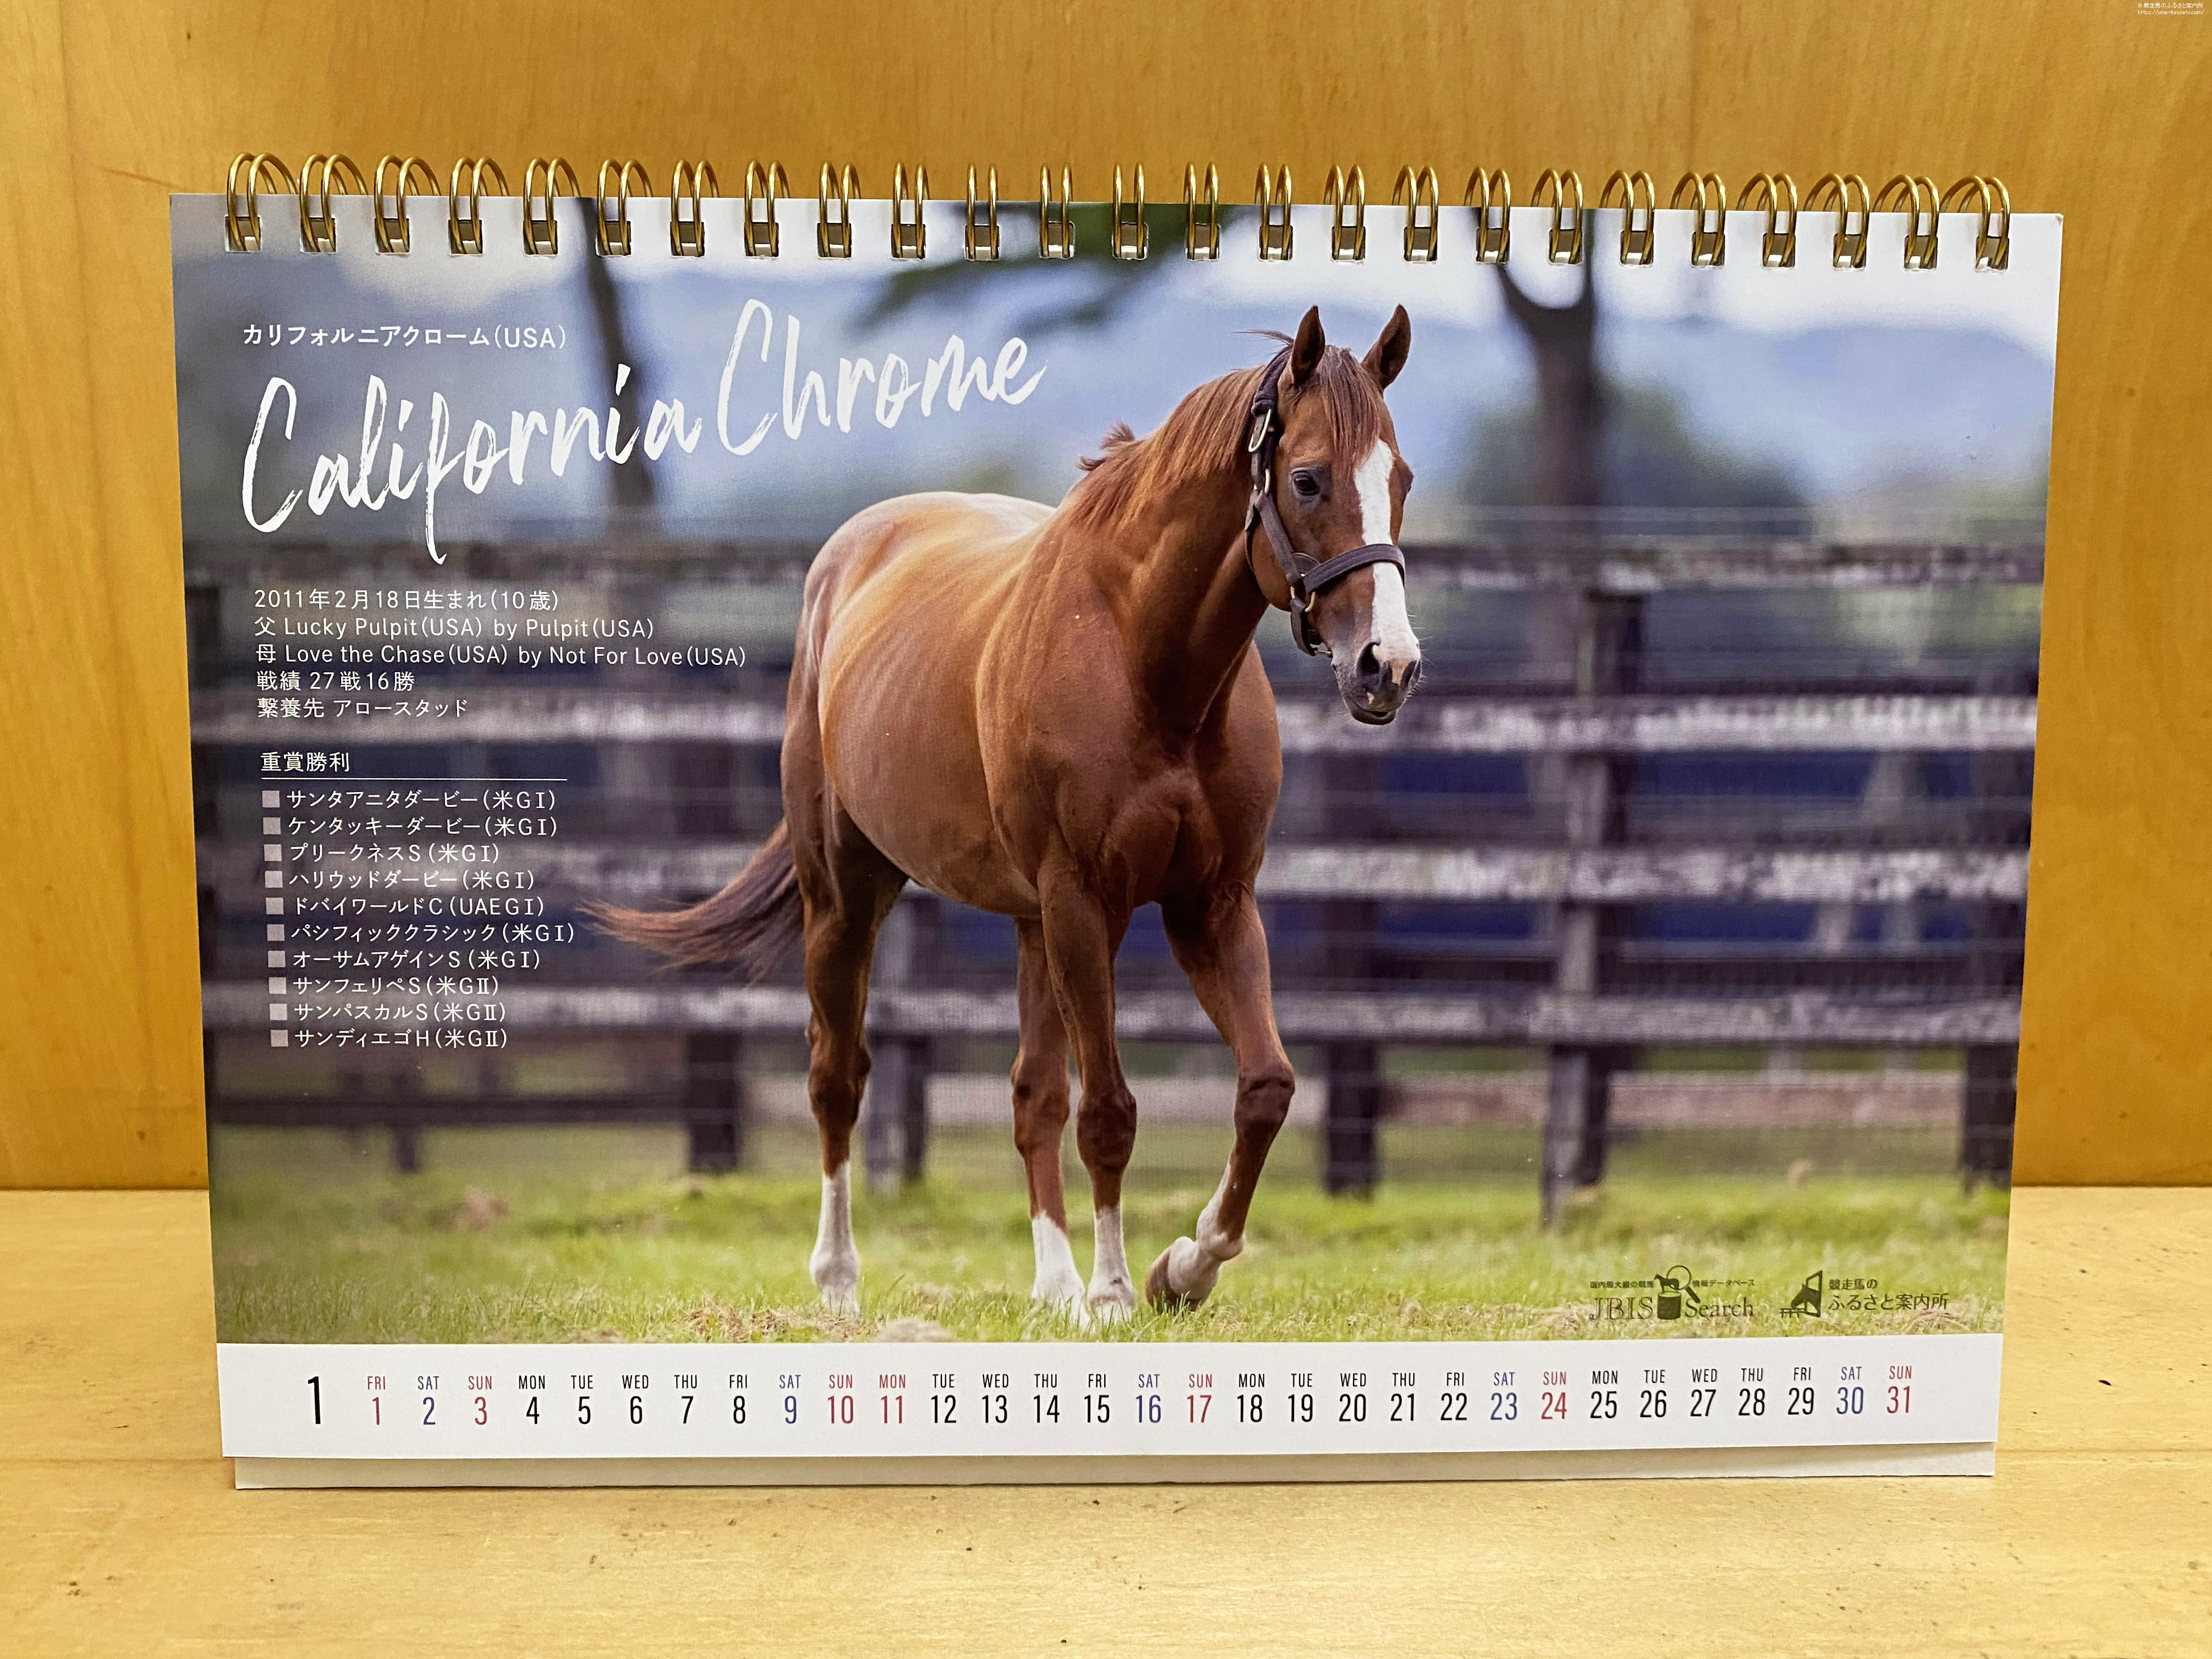 オリジナル卓上カレンダー『2021 Stallion Calendar』を1,000名様に